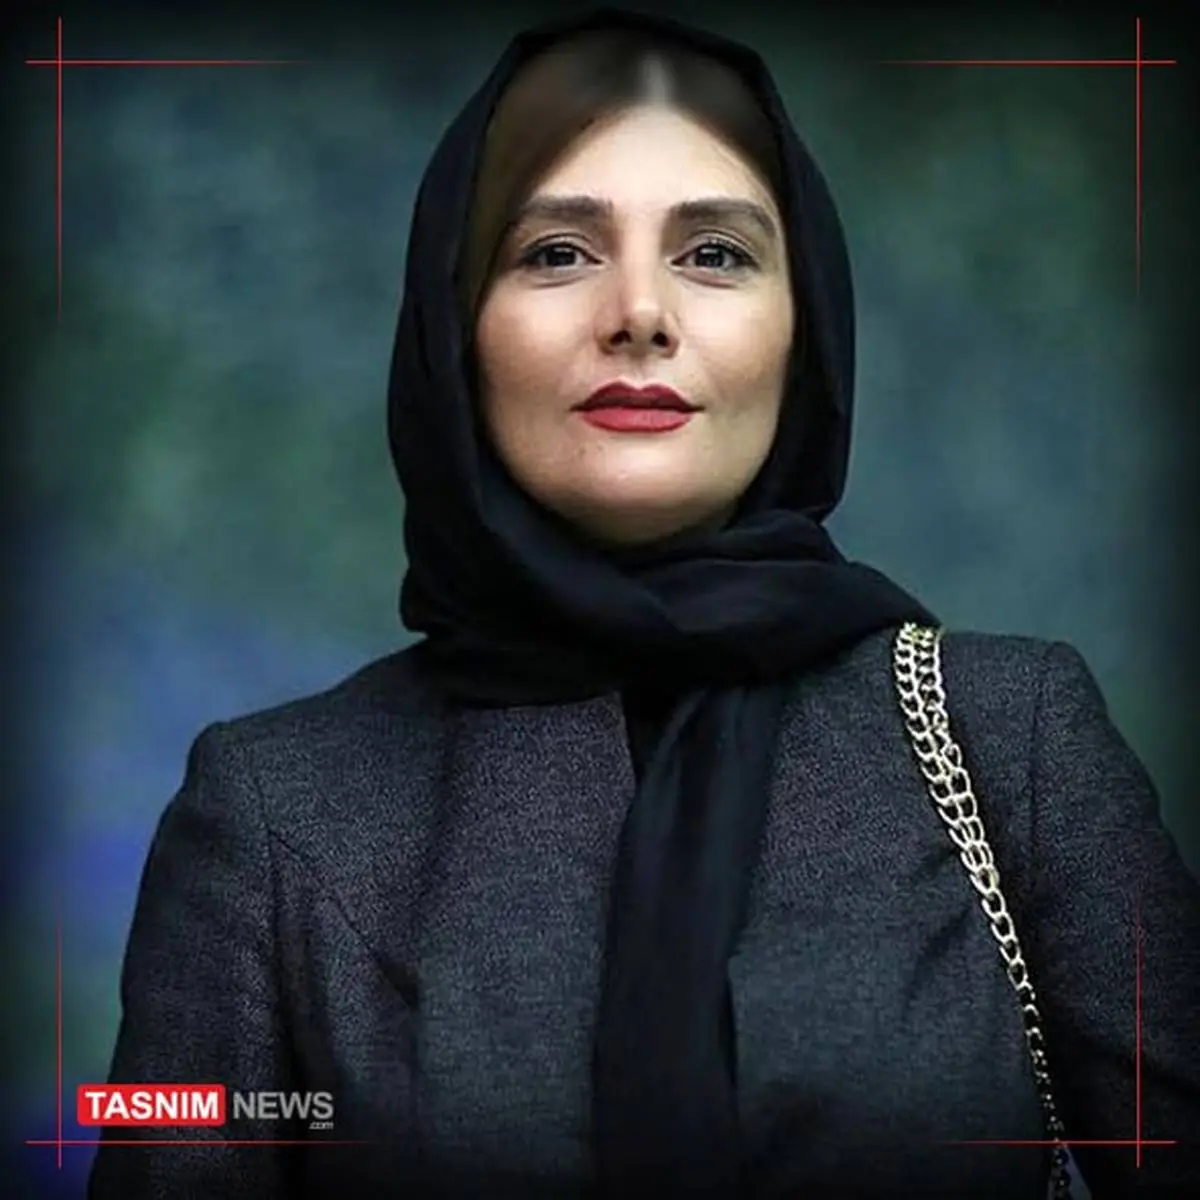 فوری | هنگامه قاضیانی بازیگر مشهور سینمای ایران بازداشت شد